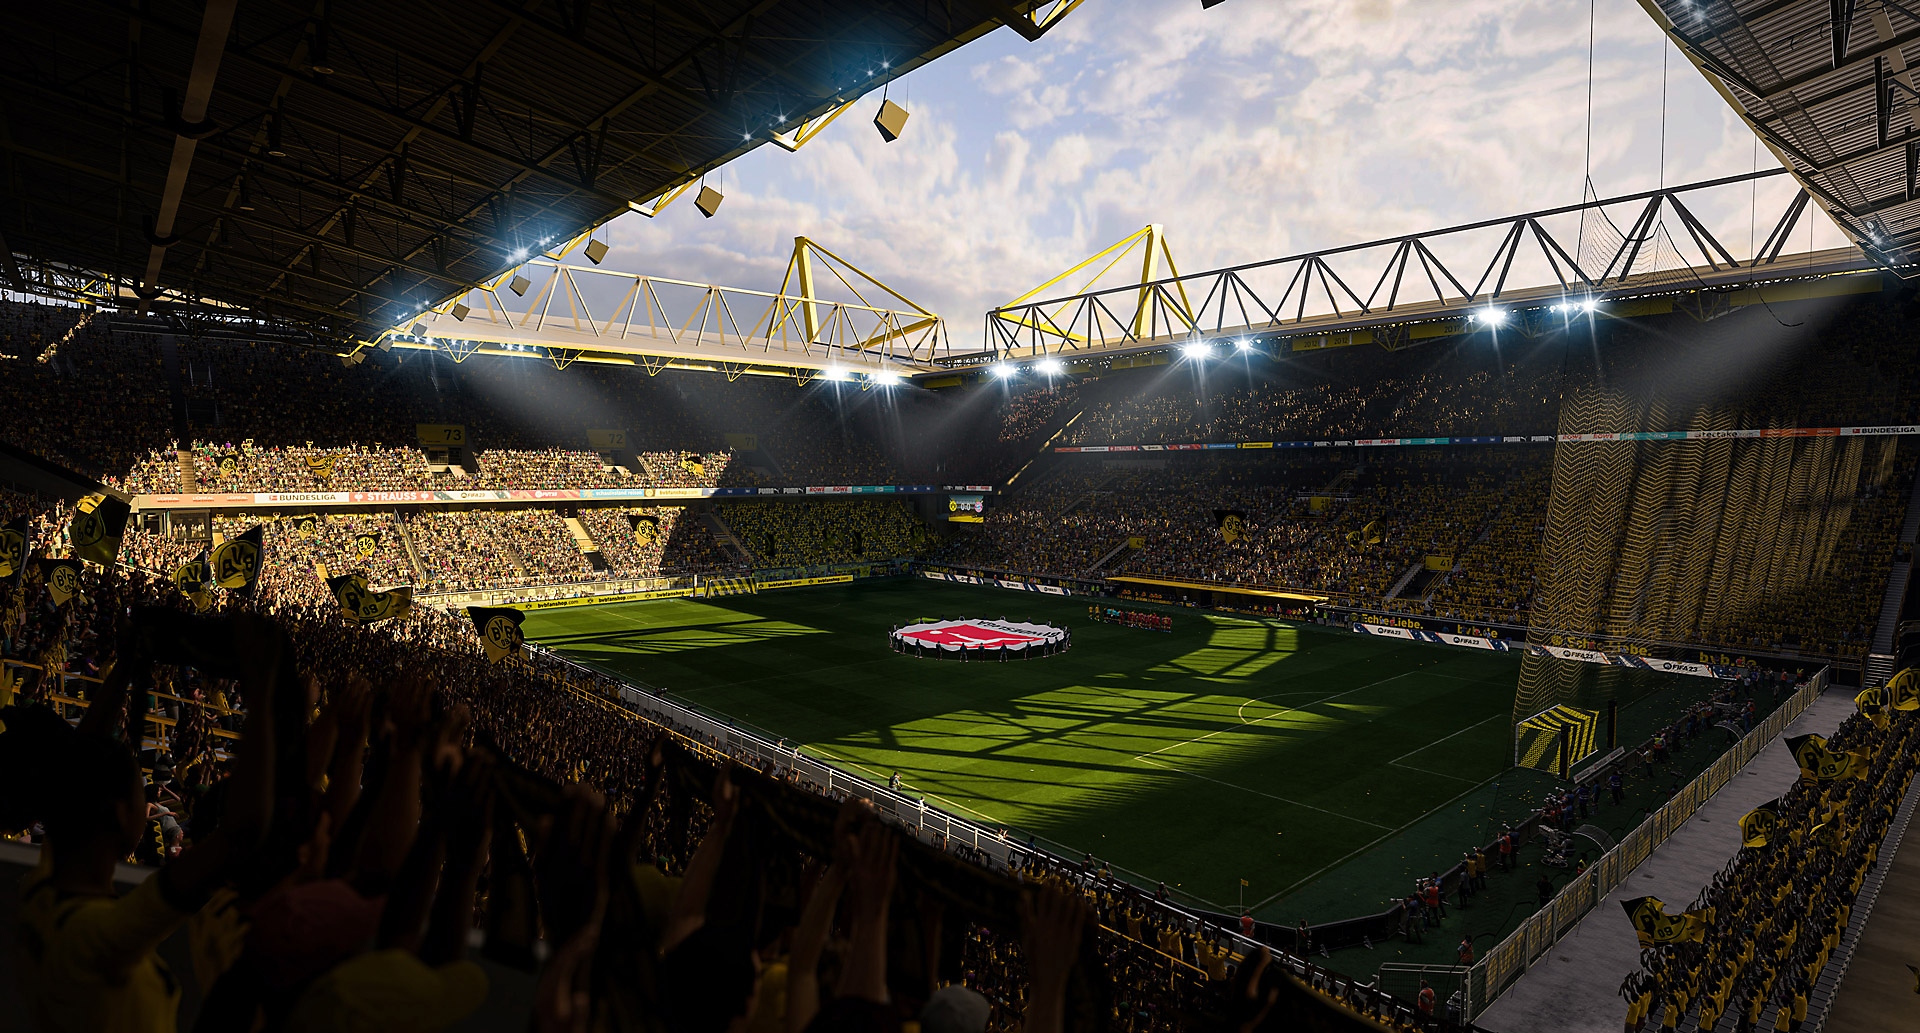 EA Sports FIFA 23 skærmbillede af et fodboldstadion i solen